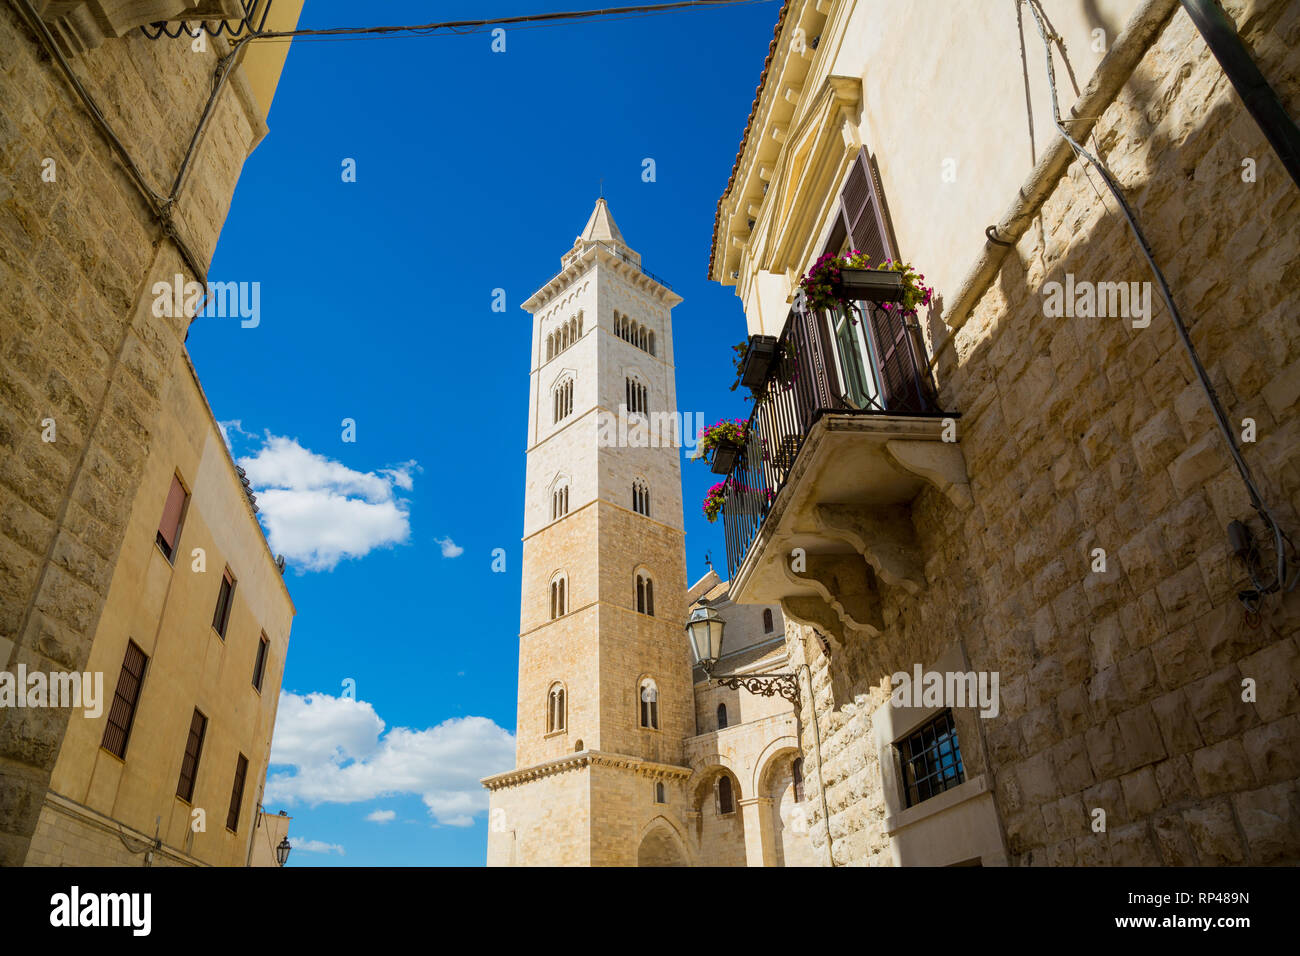 La torre della cattedrale della città di Trani, regione Puglia, Italia Meridionale Foto Stock